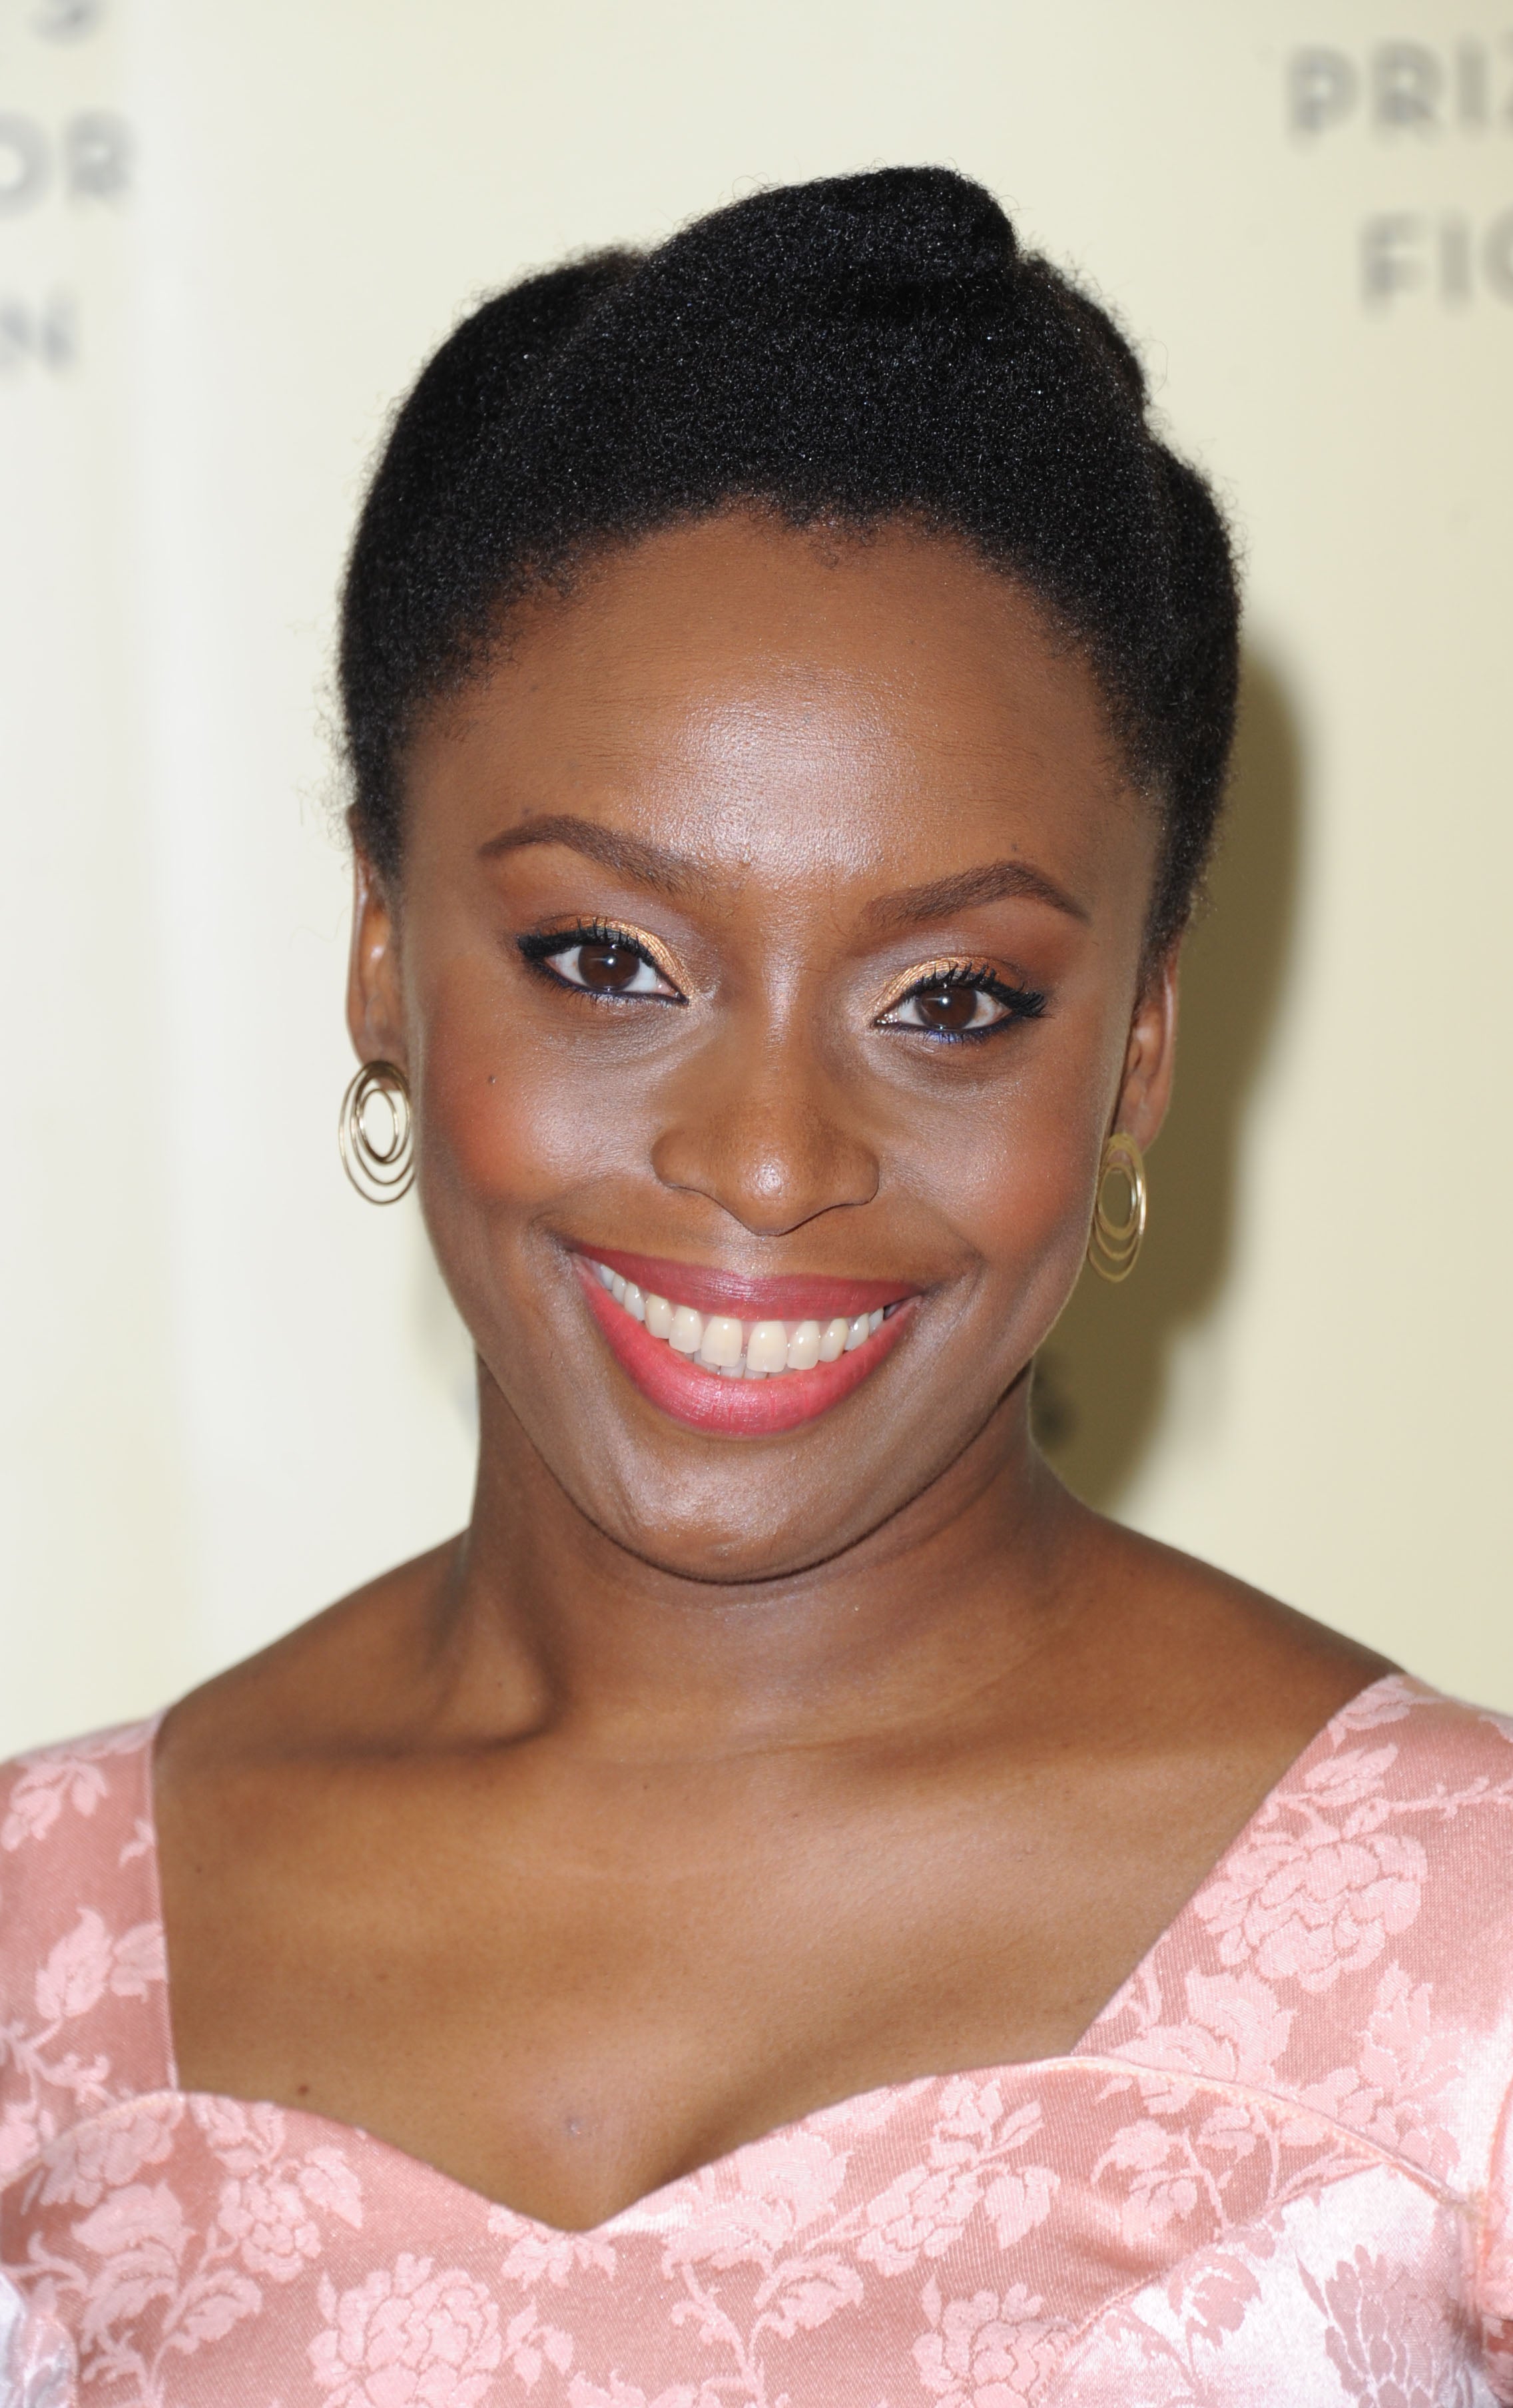 Chimamanda Ngozi Adichie Drops 'Feminist Manifesto' On How To Raise A Child
